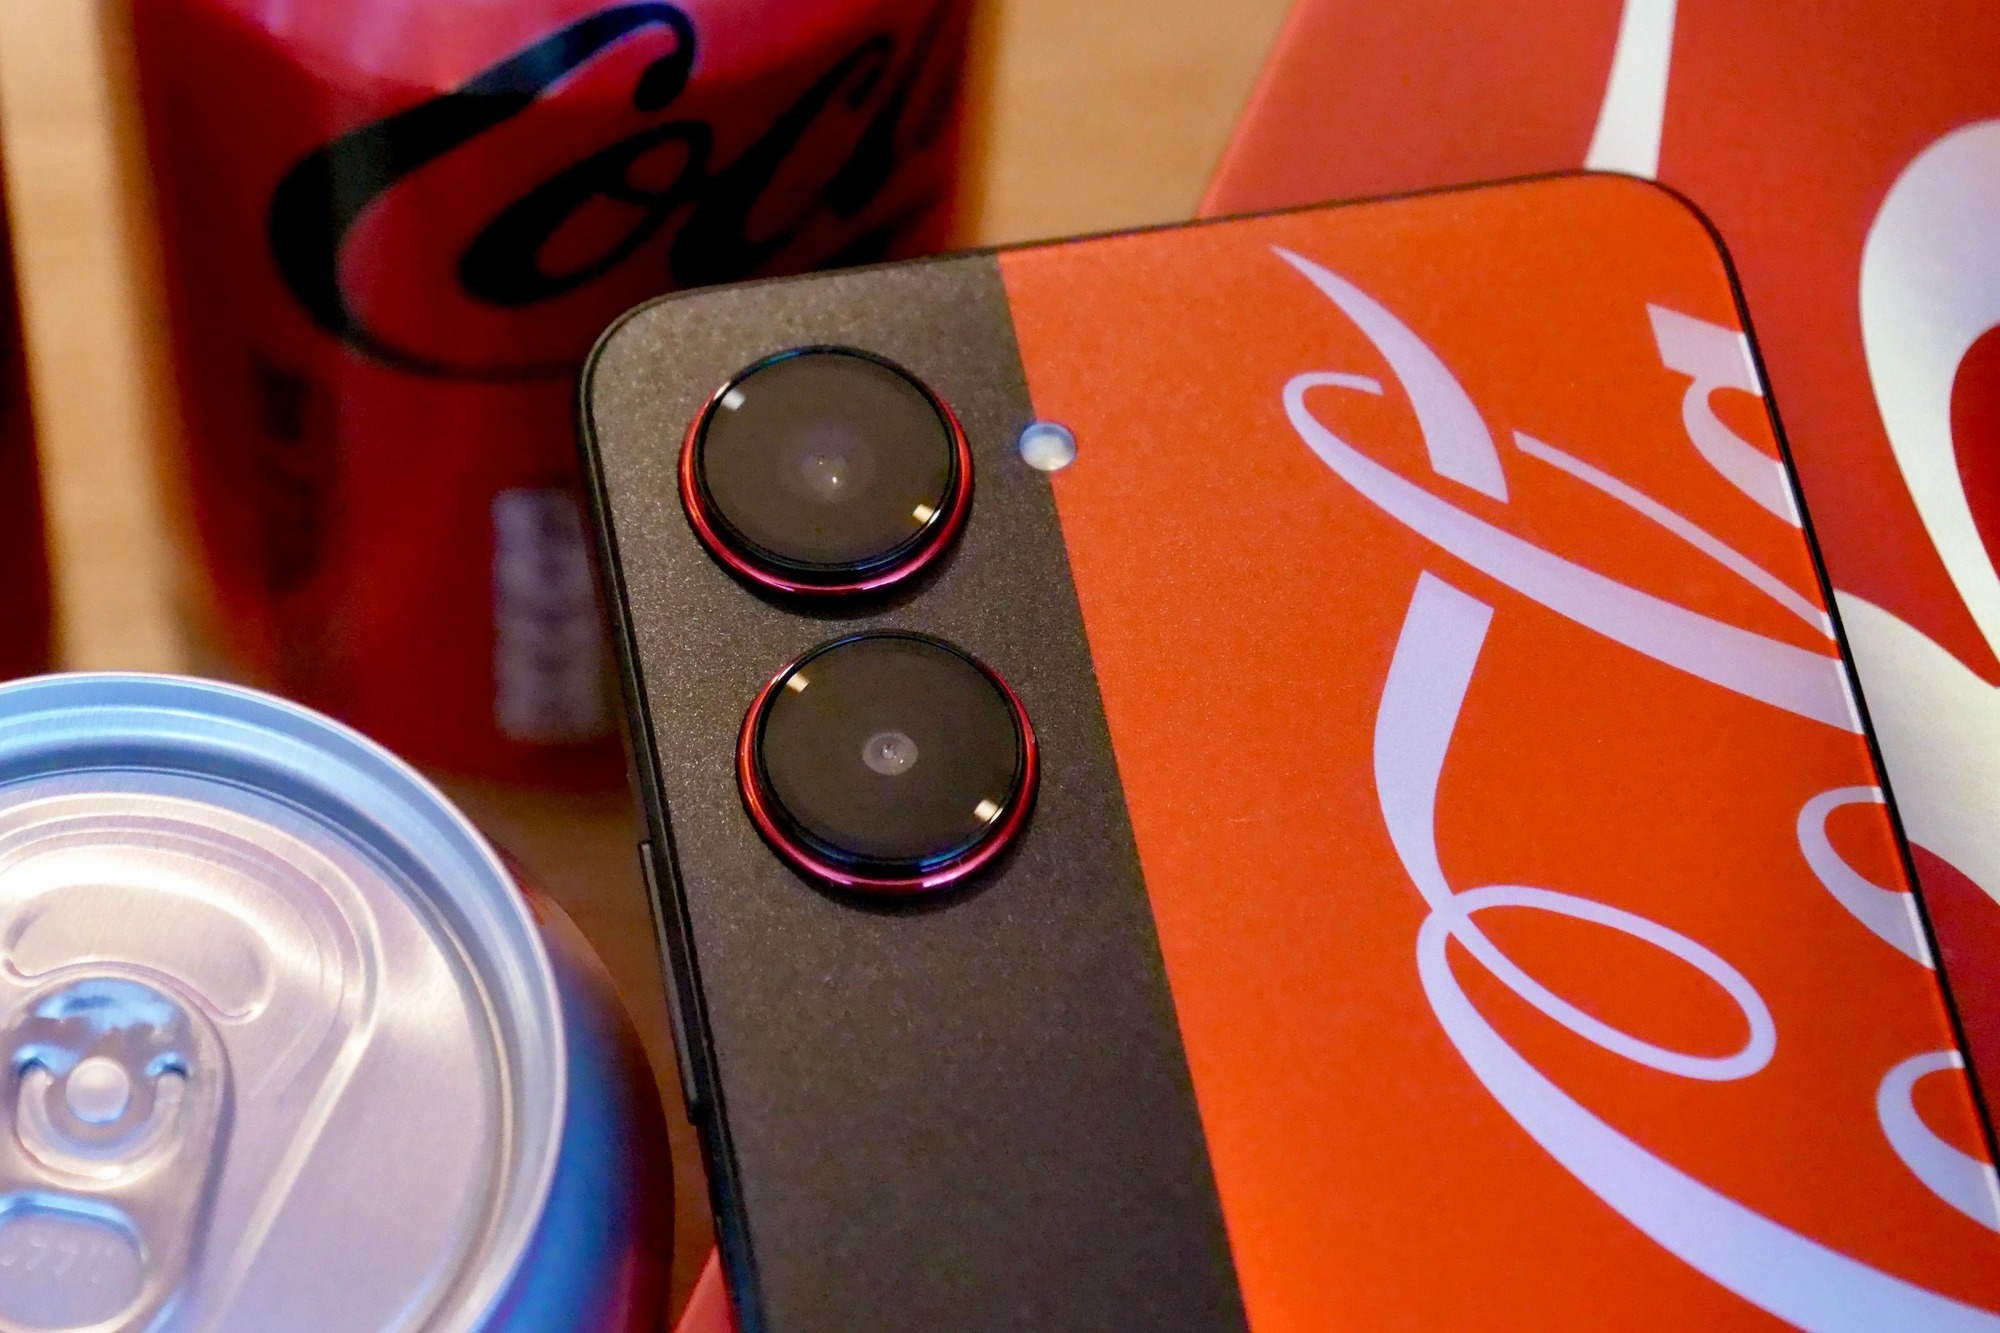 Ra mắt điện thoại Coca-Cola, giá chỉ 5,9 triệu đồng - Ảnh 6.